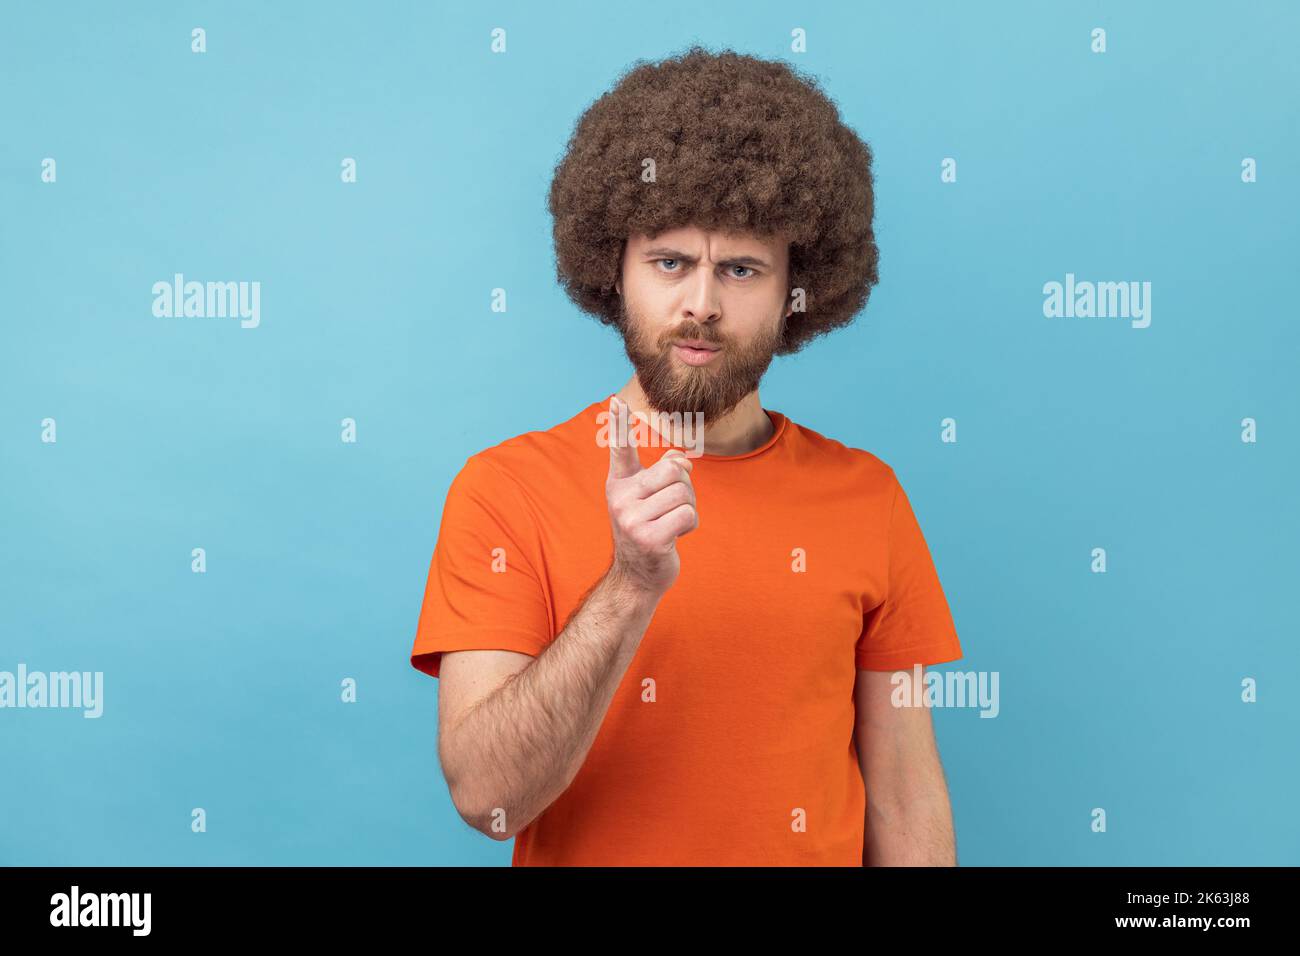 Portrait d'un homme sérieux avec une coiffure afro portant un T-shirt orange debout avec un geste d'admonishing, en faisant des signes d'erreur et d'avertissement. Studio d'intérieur isolé sur fond bleu. Banque D'Images